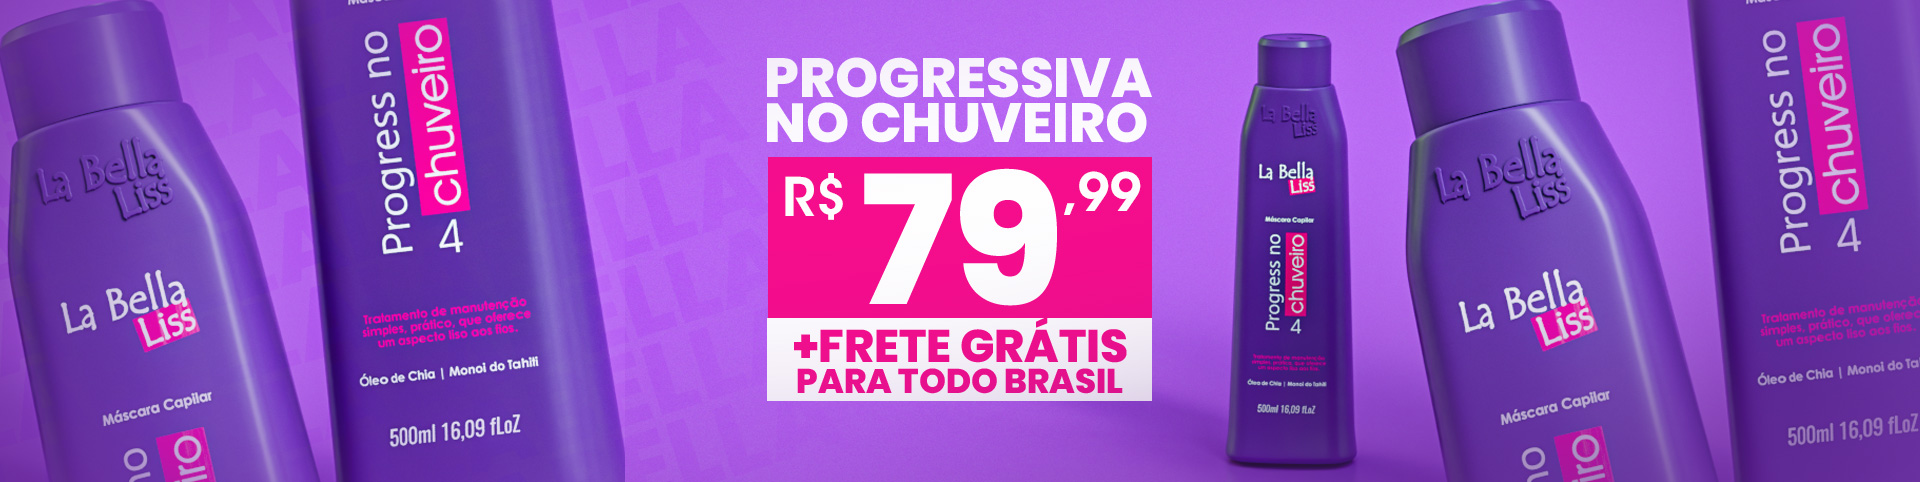 promo_progress_no_chuveiro